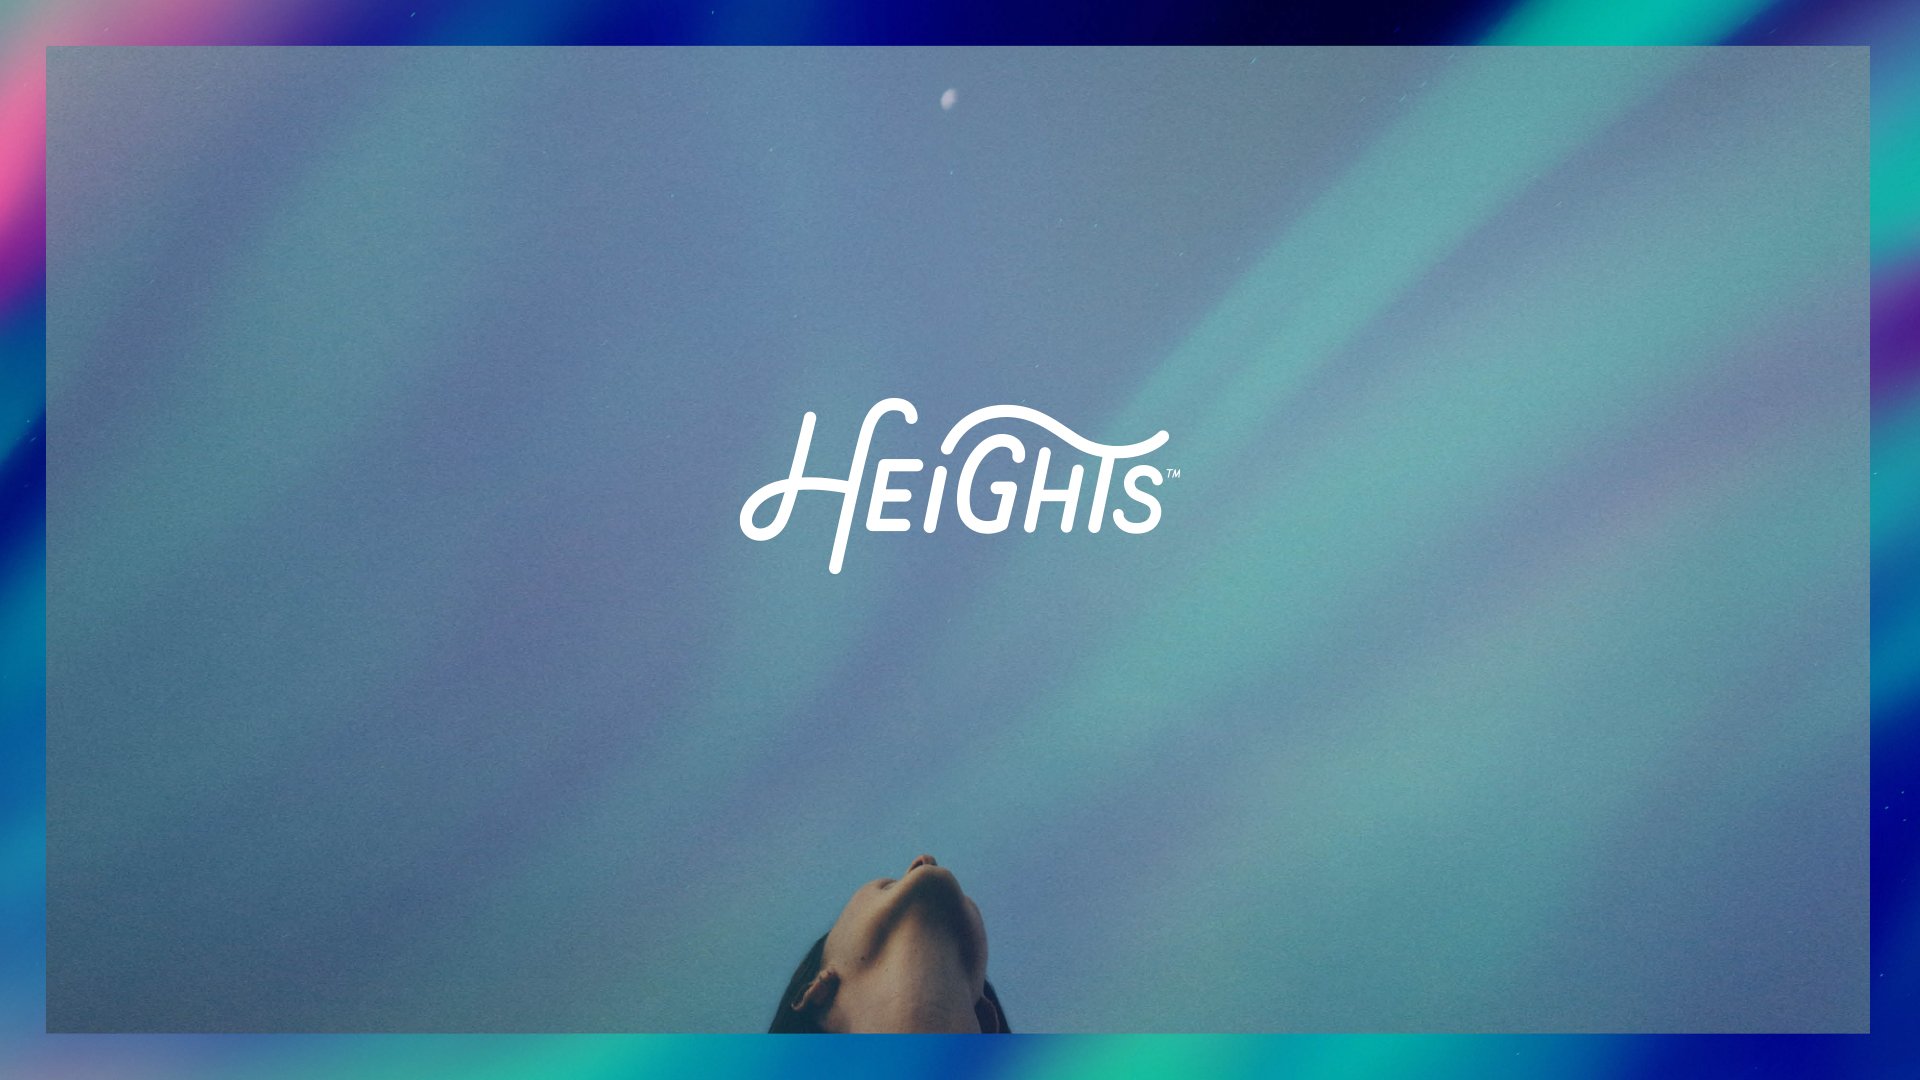 Heights_Brand_Guidelines_10082020-4.jpg